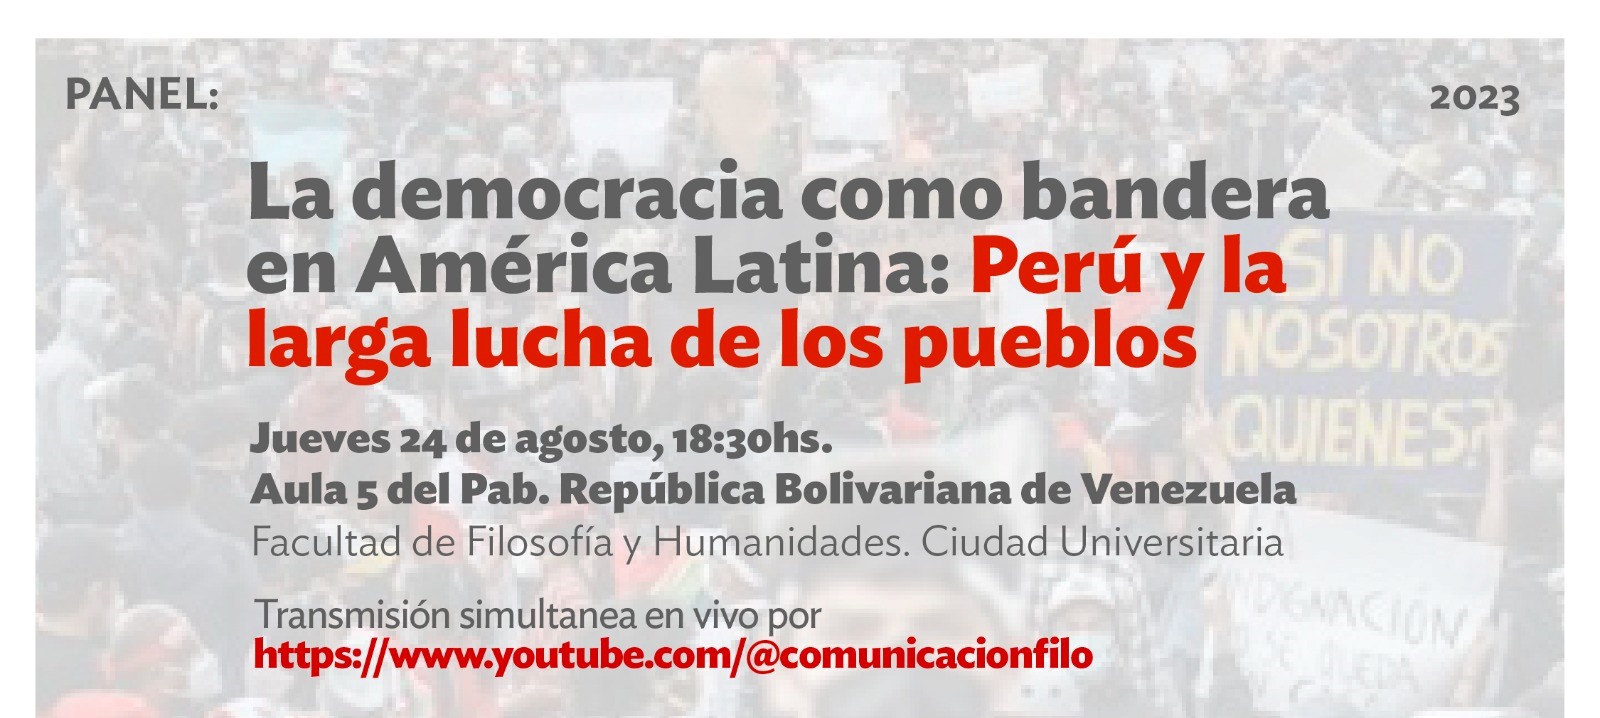 “La democracia como bandera en América Latina: Perú y la larga lucha de los pueblos”